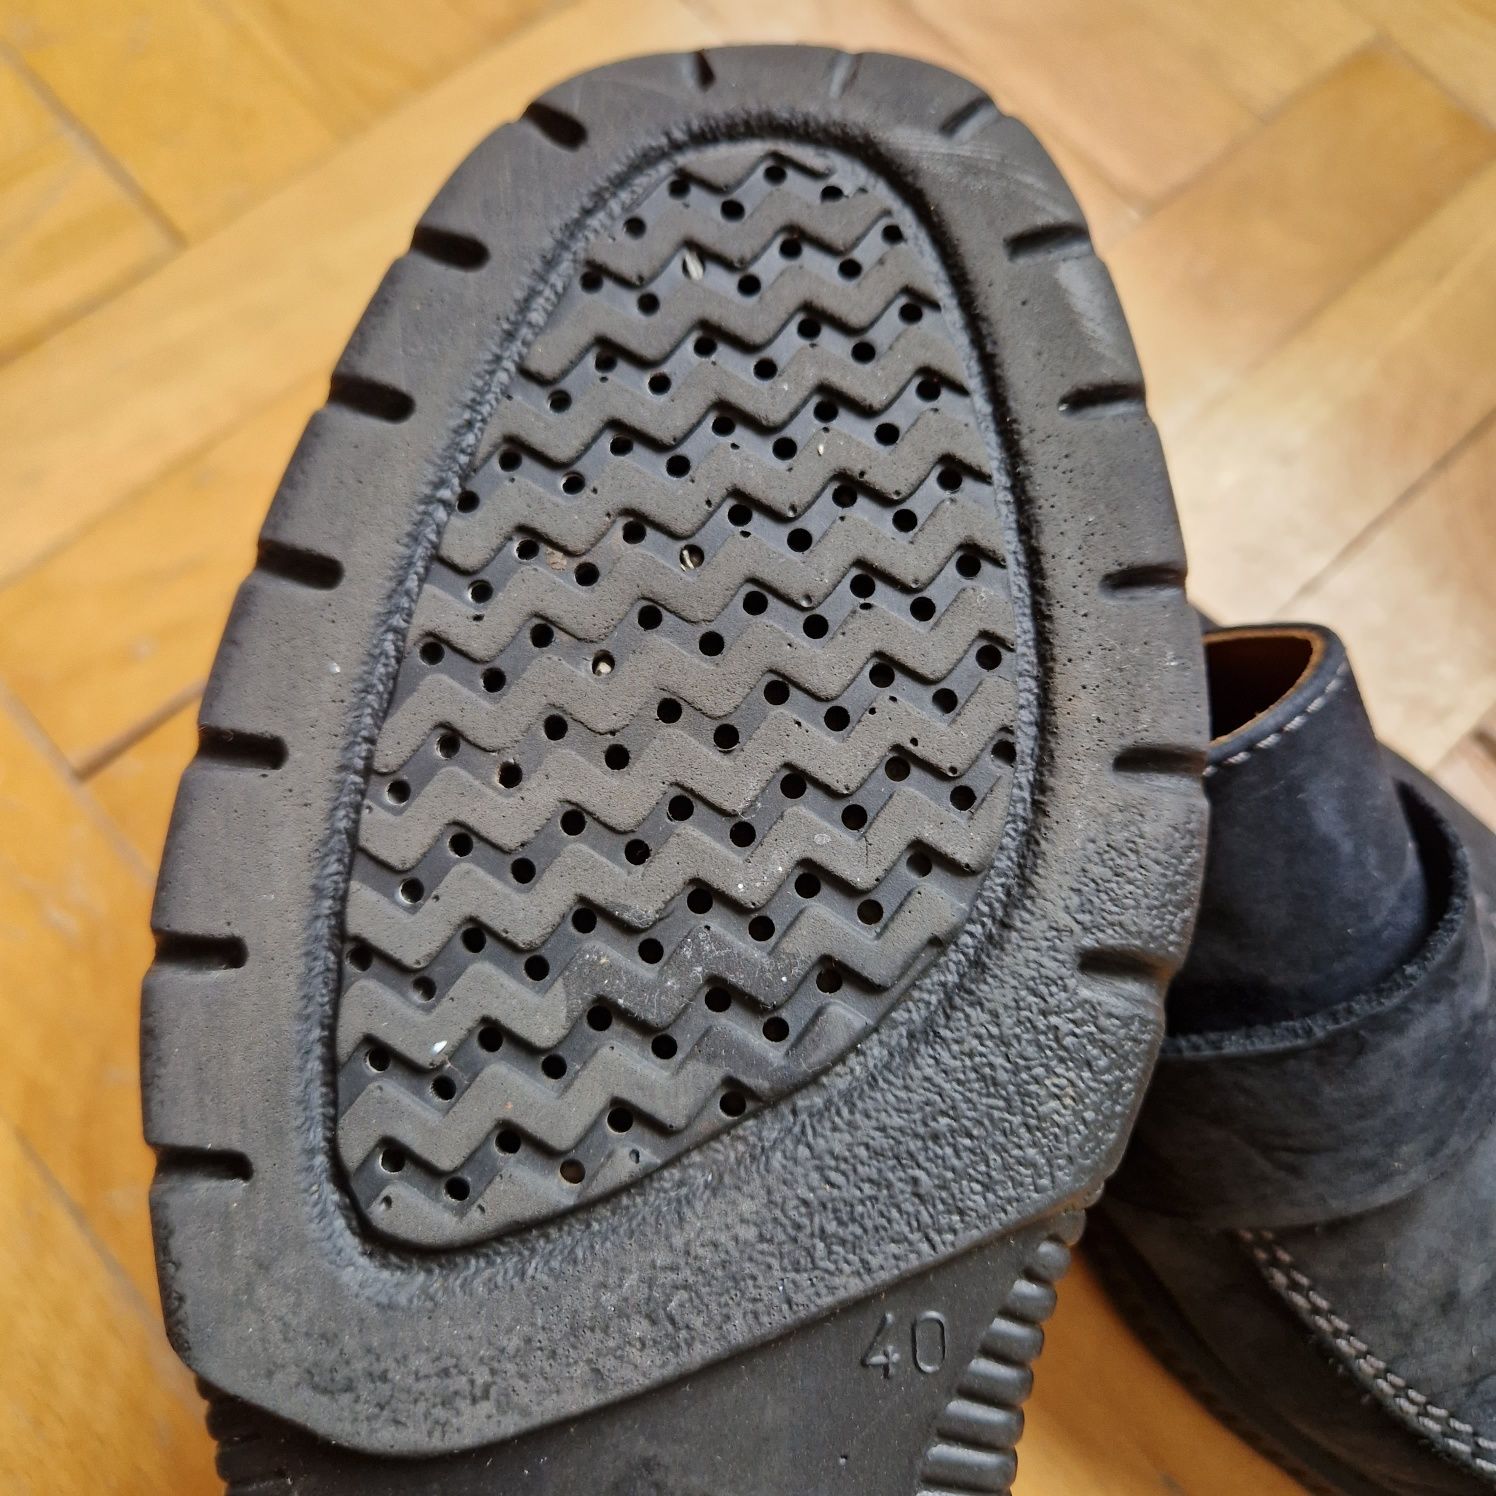 Pantofi GEOX, piele întoarsă - 40 (Fit 41)